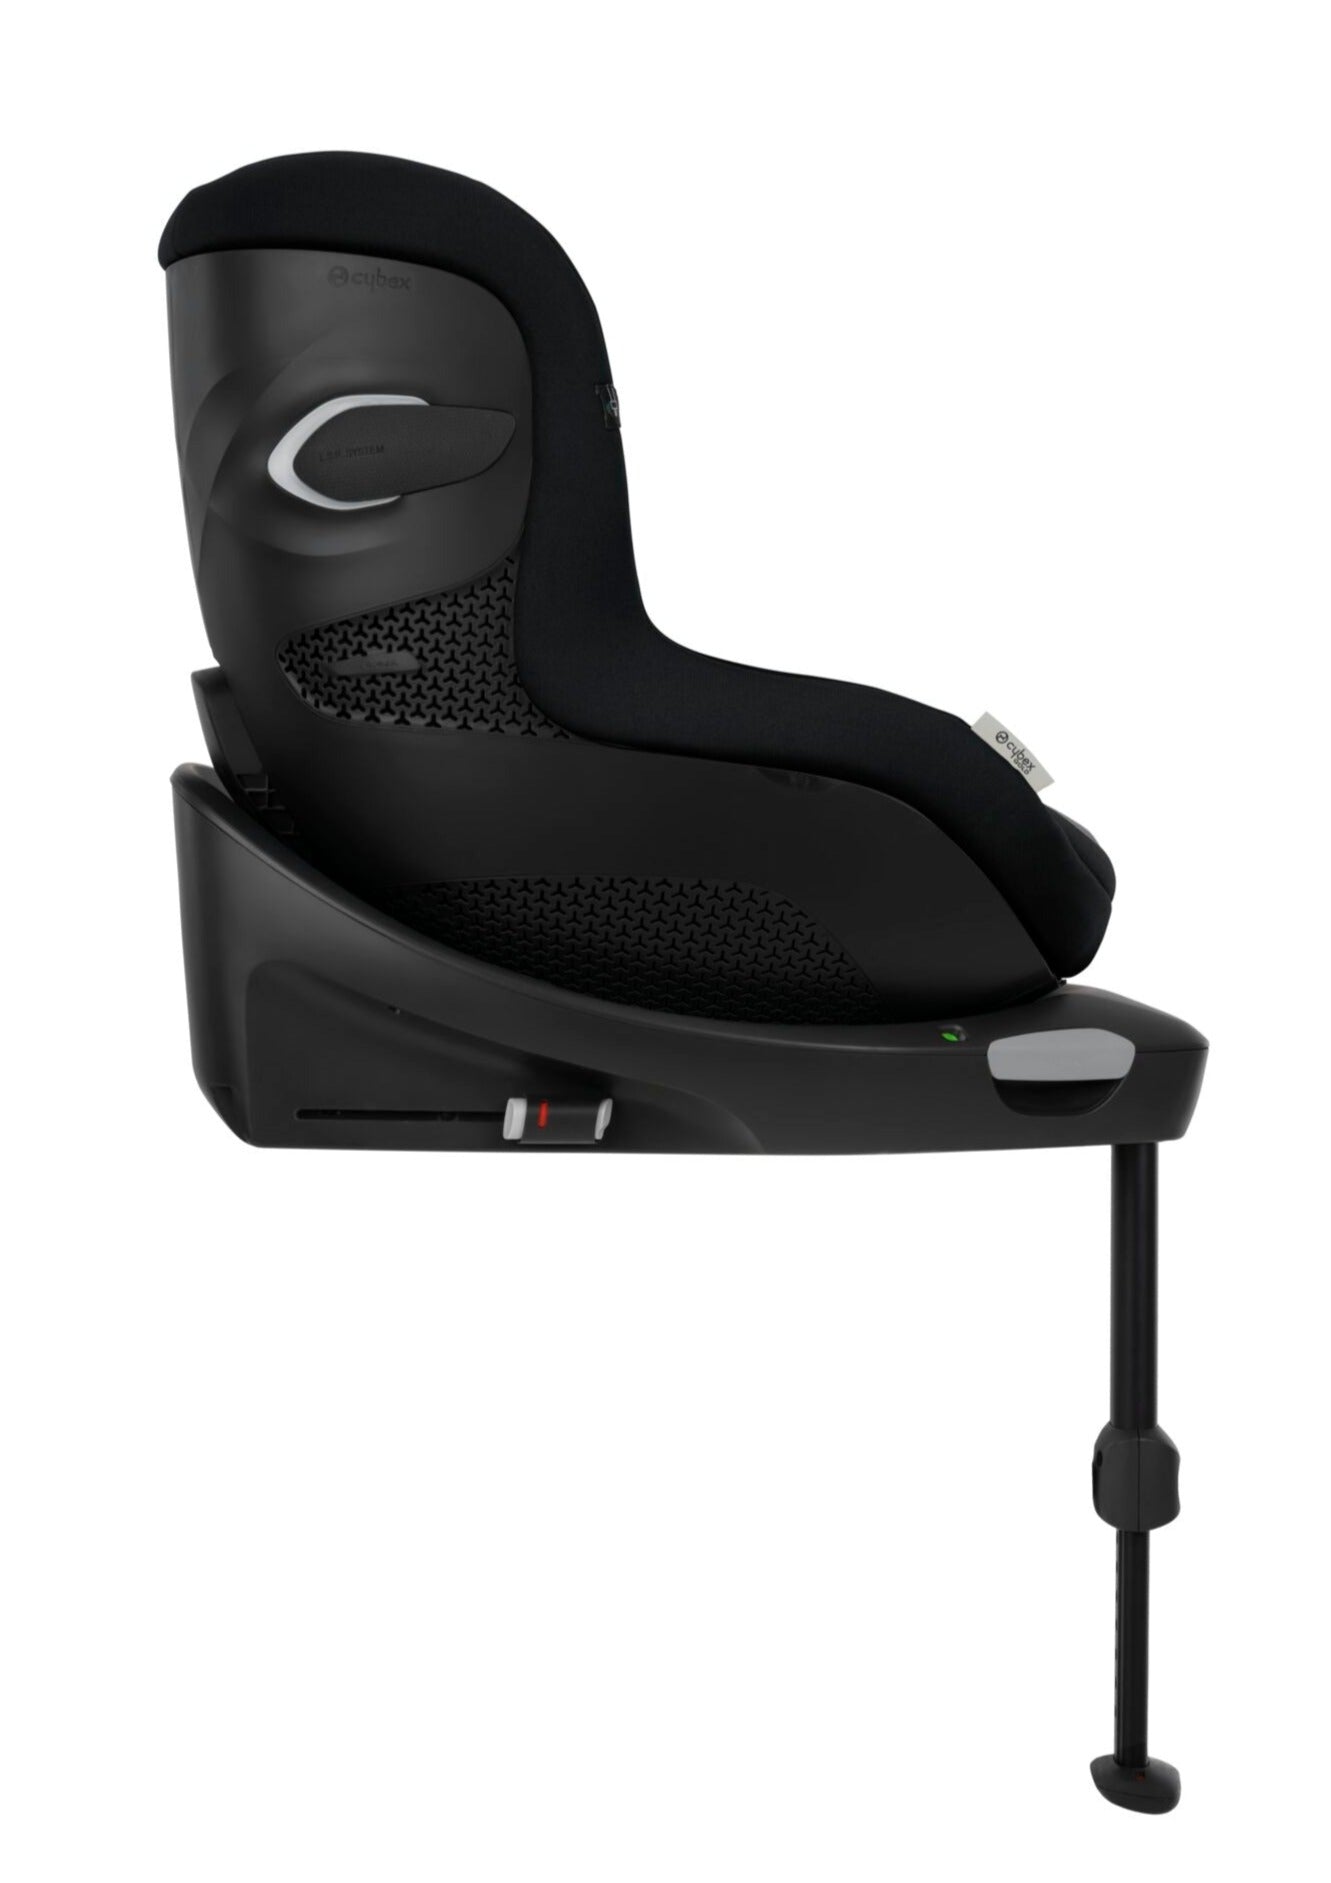 Cybex Sirona Gi i-Size 360° Rotating ISOFIX Toddler Car Seat